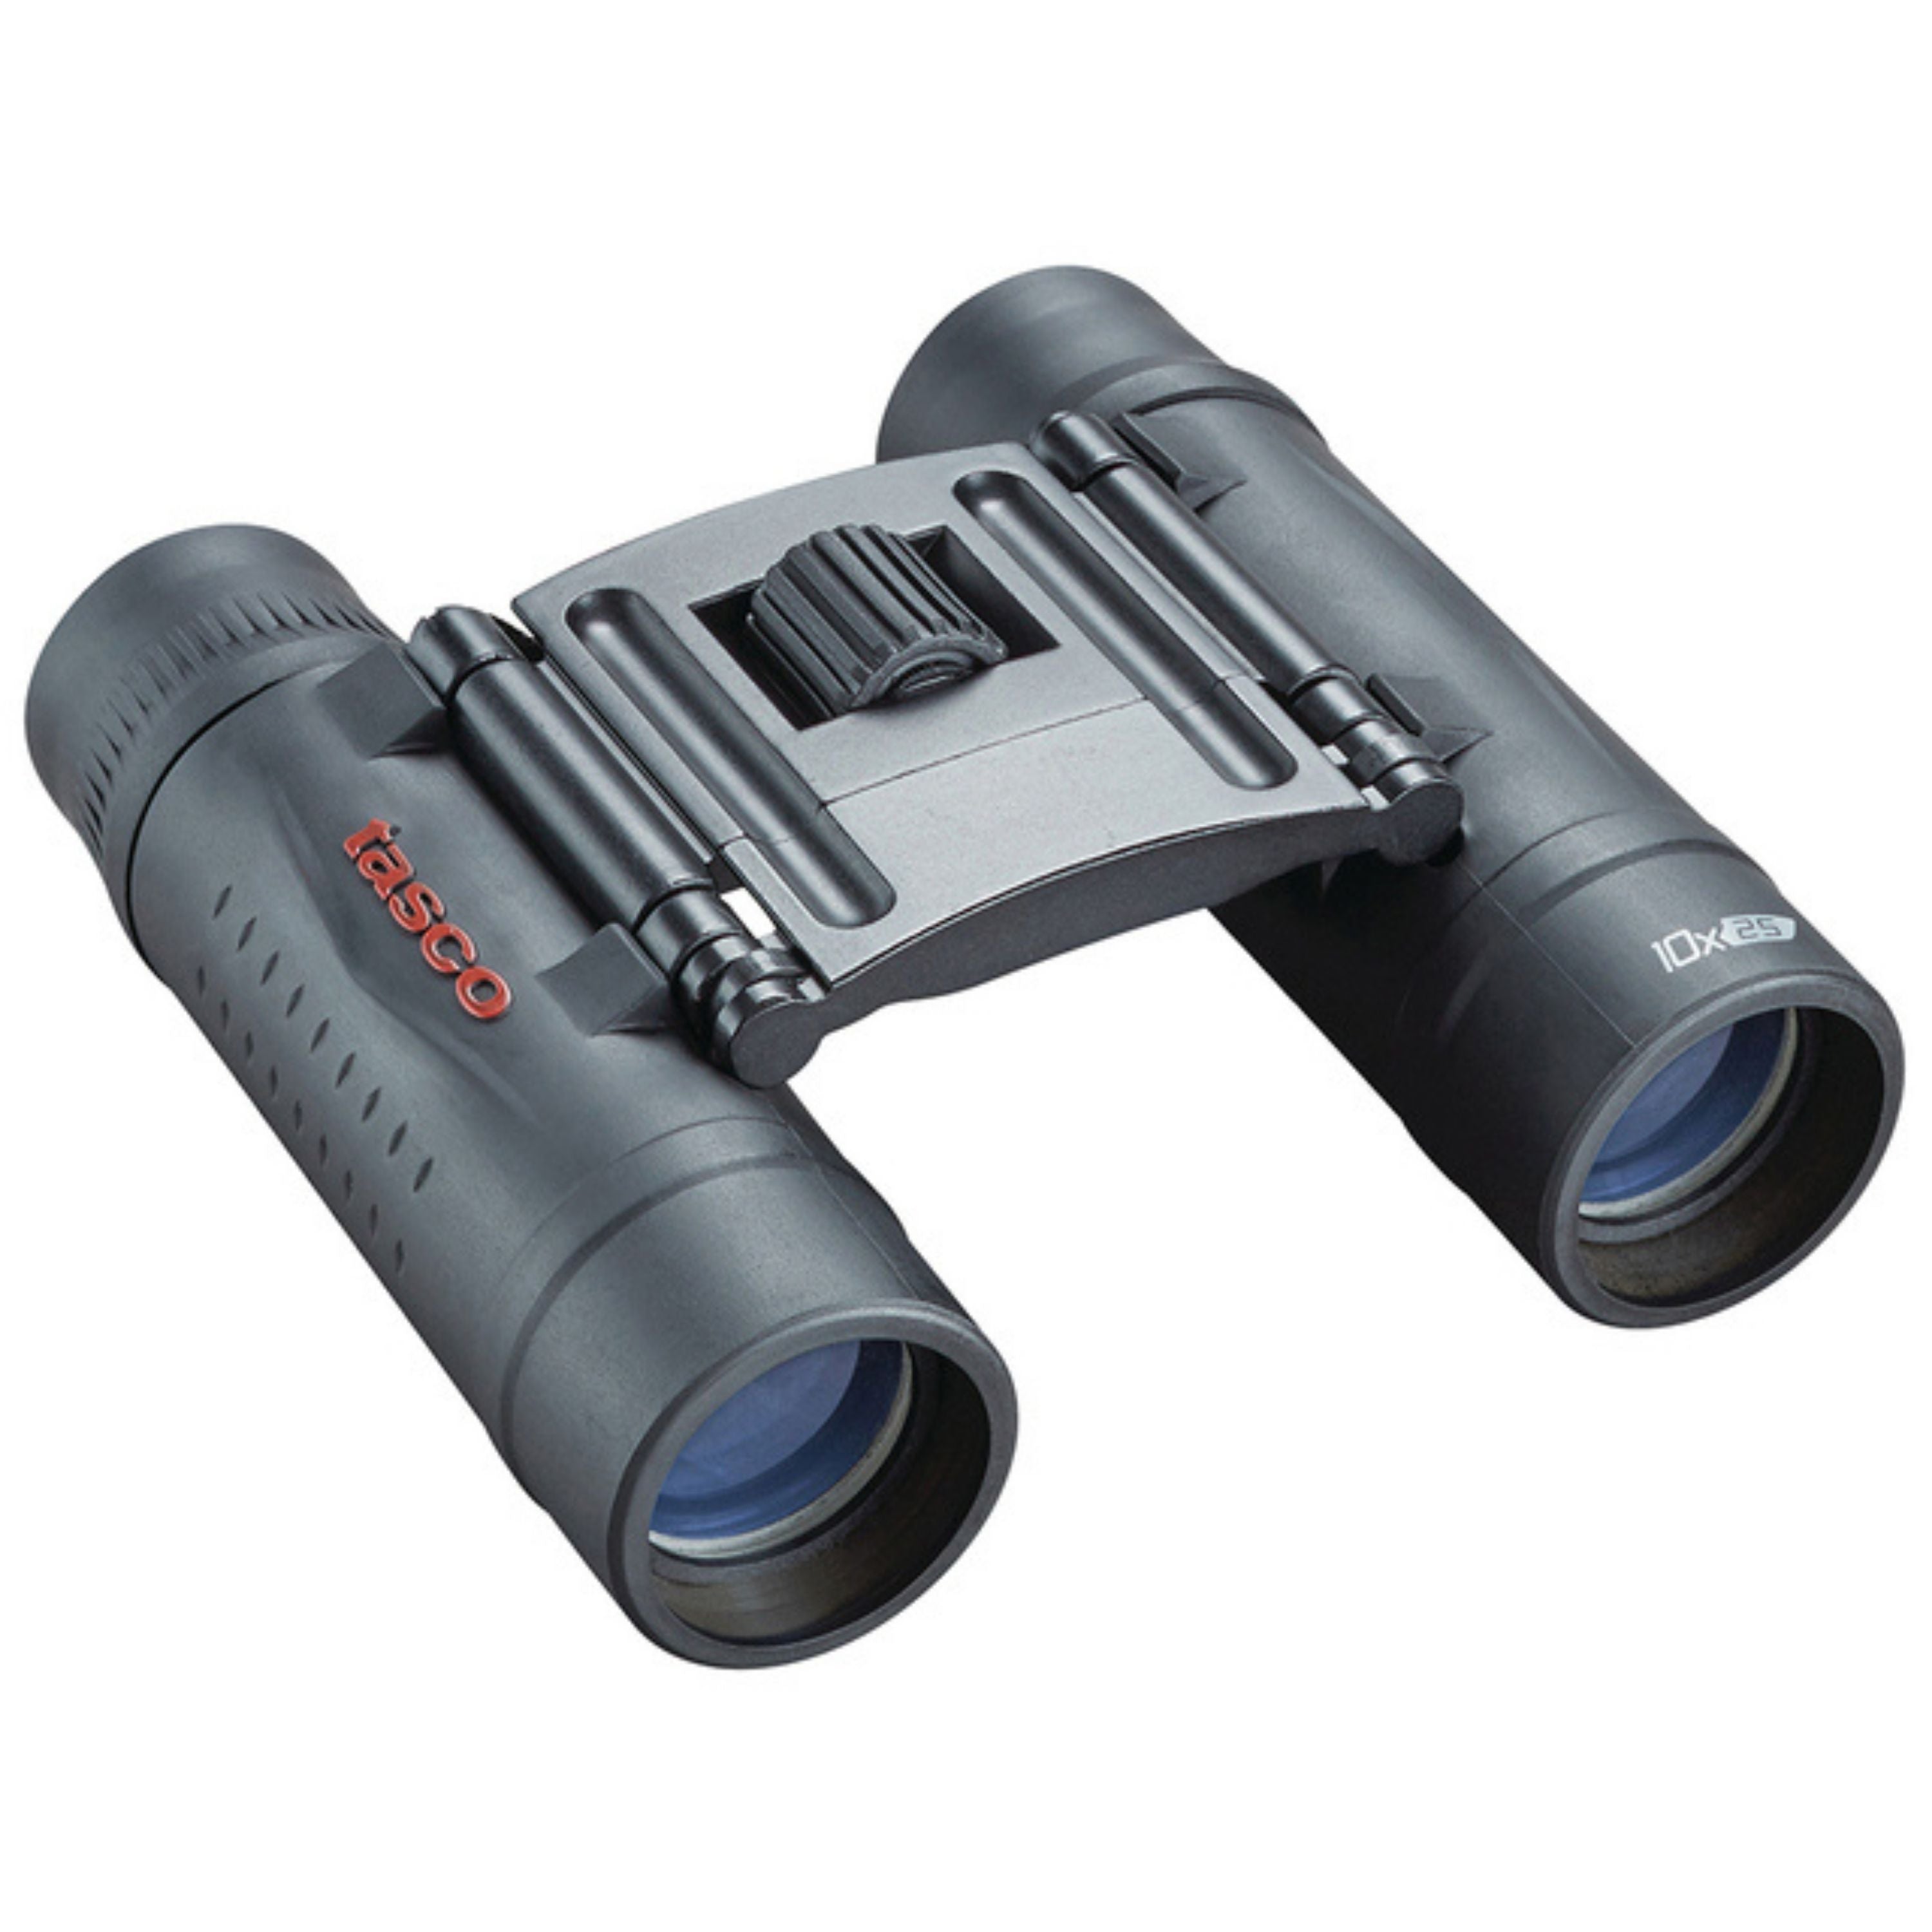 Jumelles compactes "Essentials" 10x25 mm||"Essentials" 10x25 mm Compact binocular